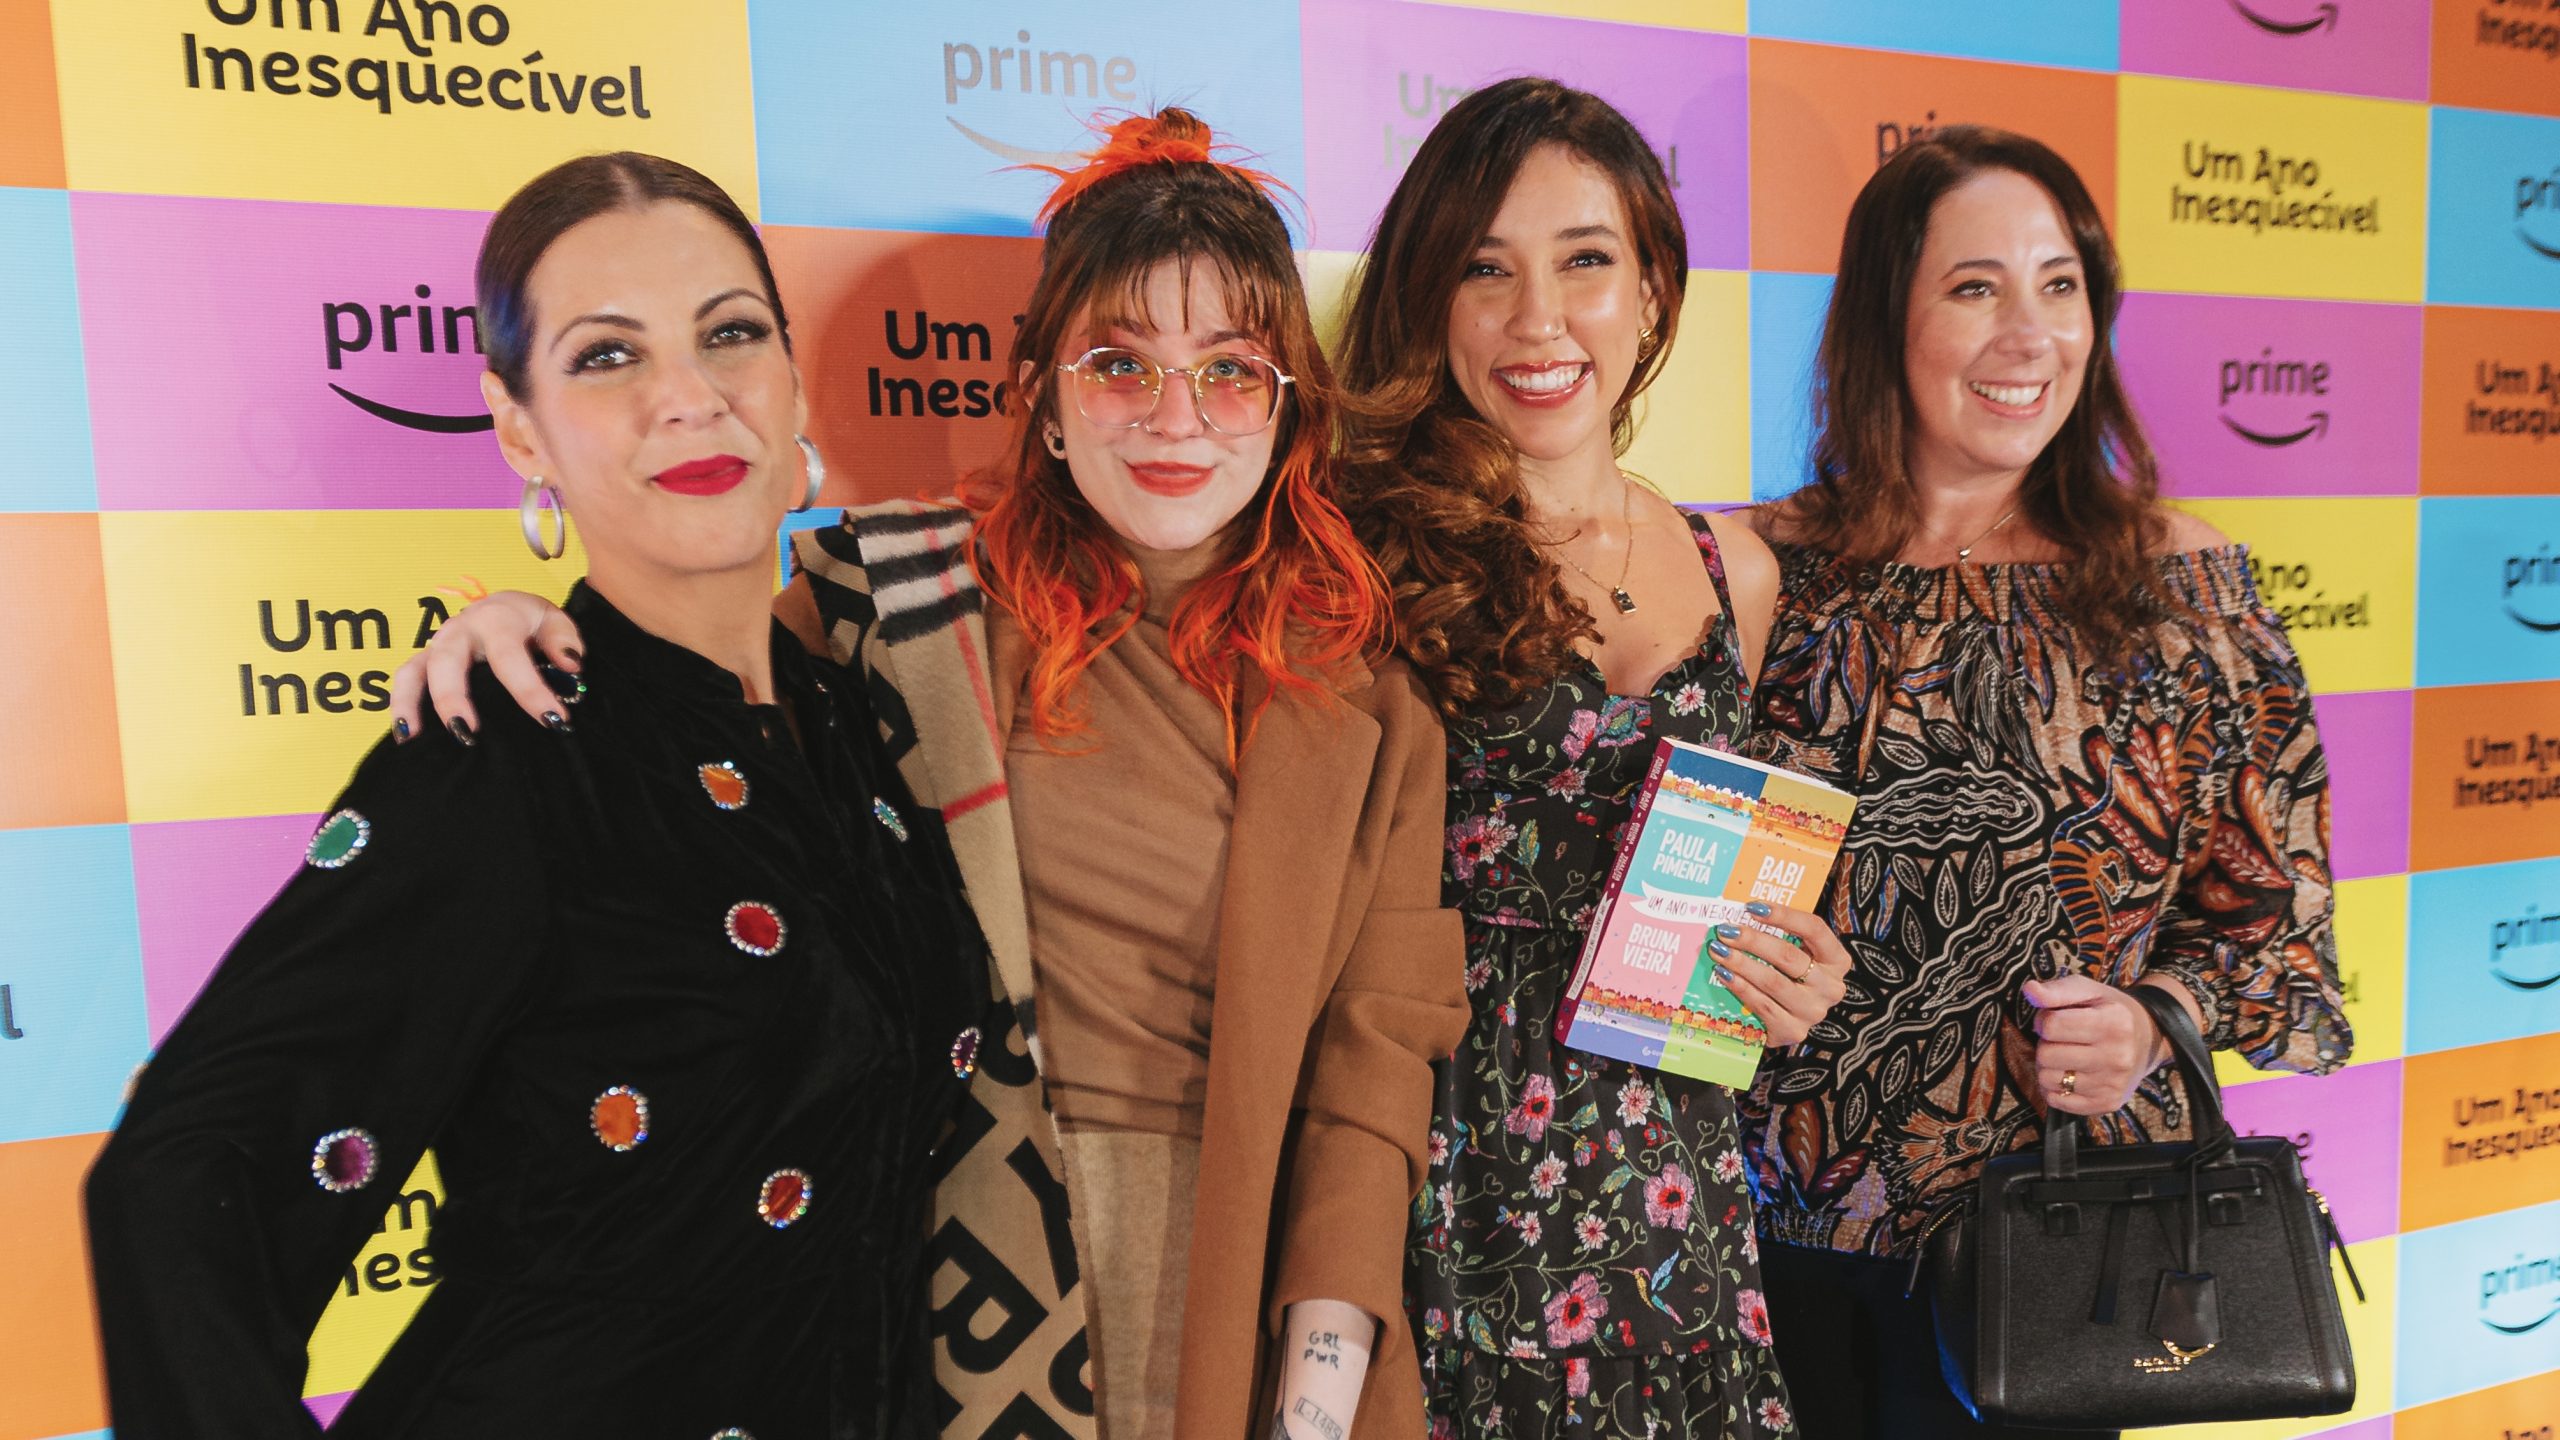 Thalita Rebouças, Babi Dewet, Bruna Vieira e Paula Pimenta na pré-estreia de Um Ano Inesquecível do Prime Video